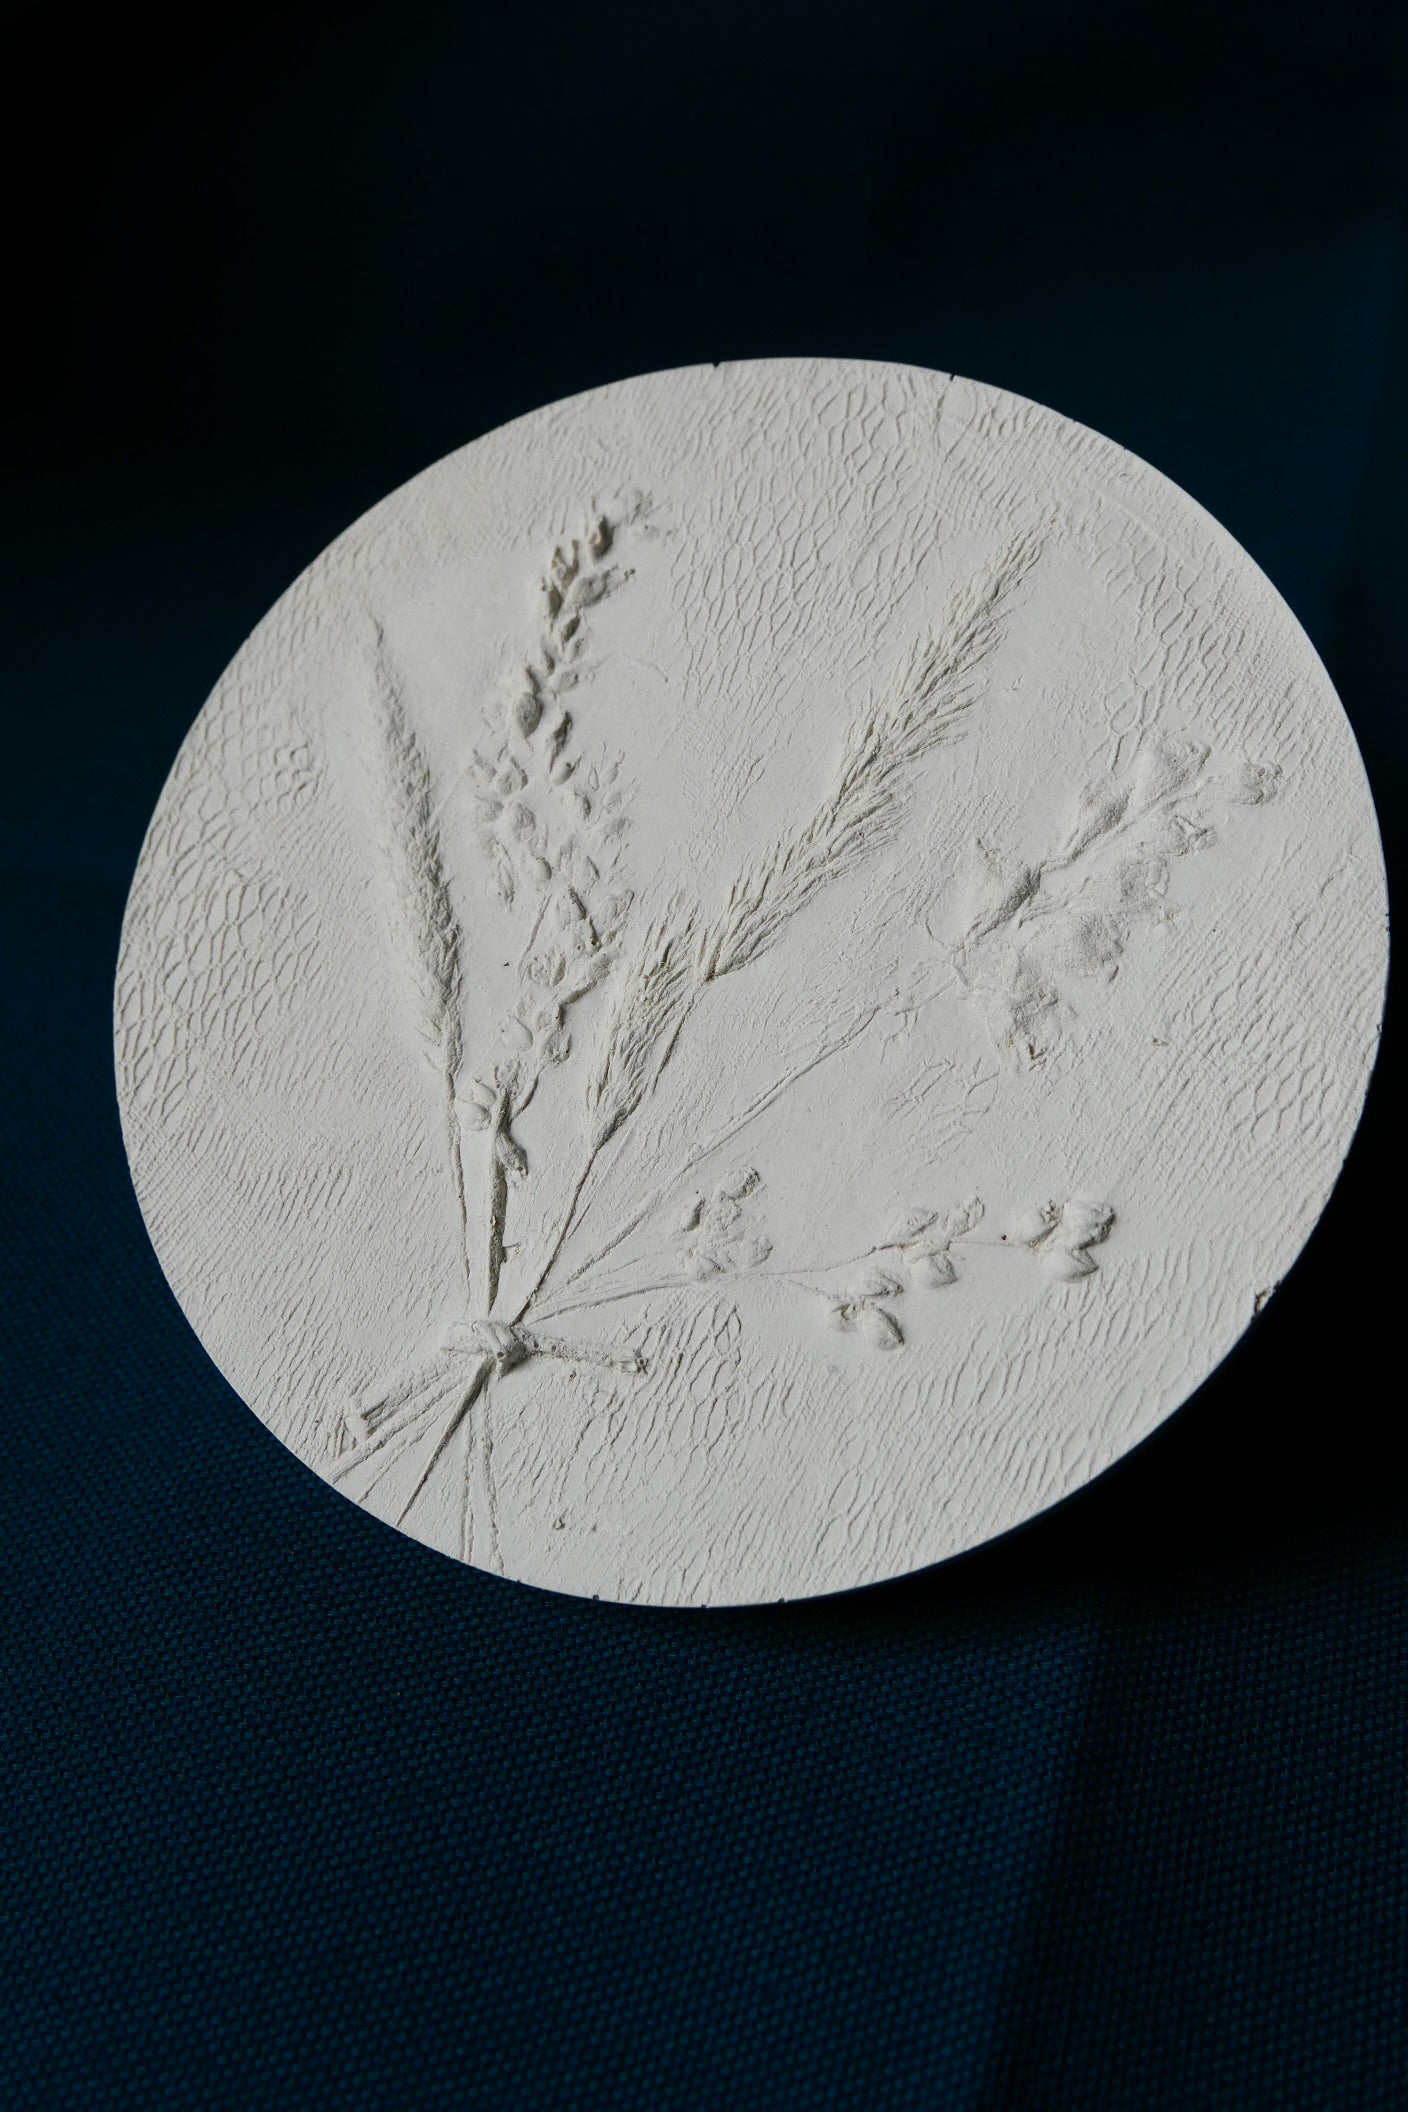 Botanical bas relief 'Papaver&Solidago'